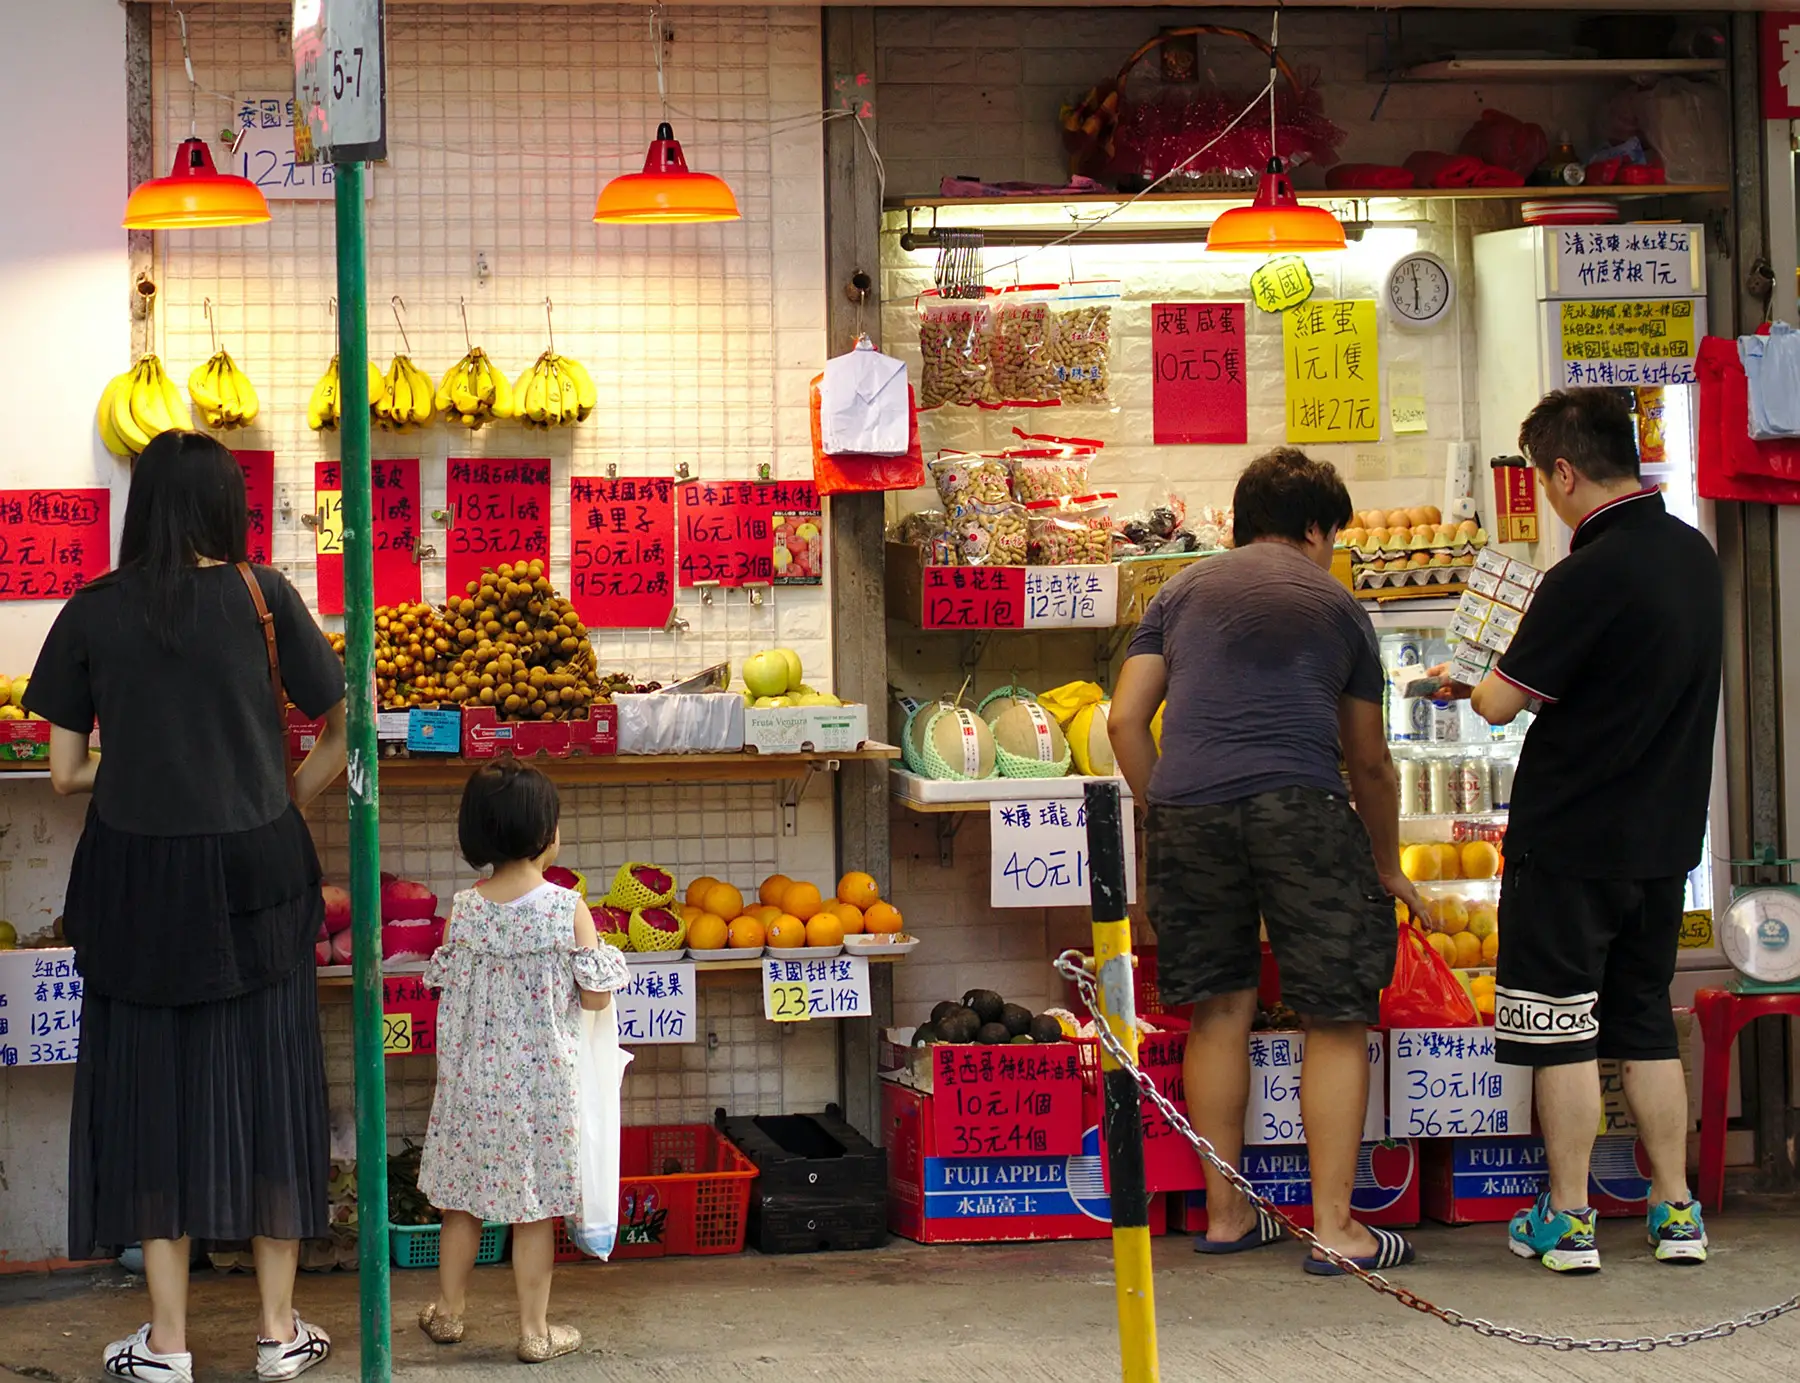 Hong Kong wet market